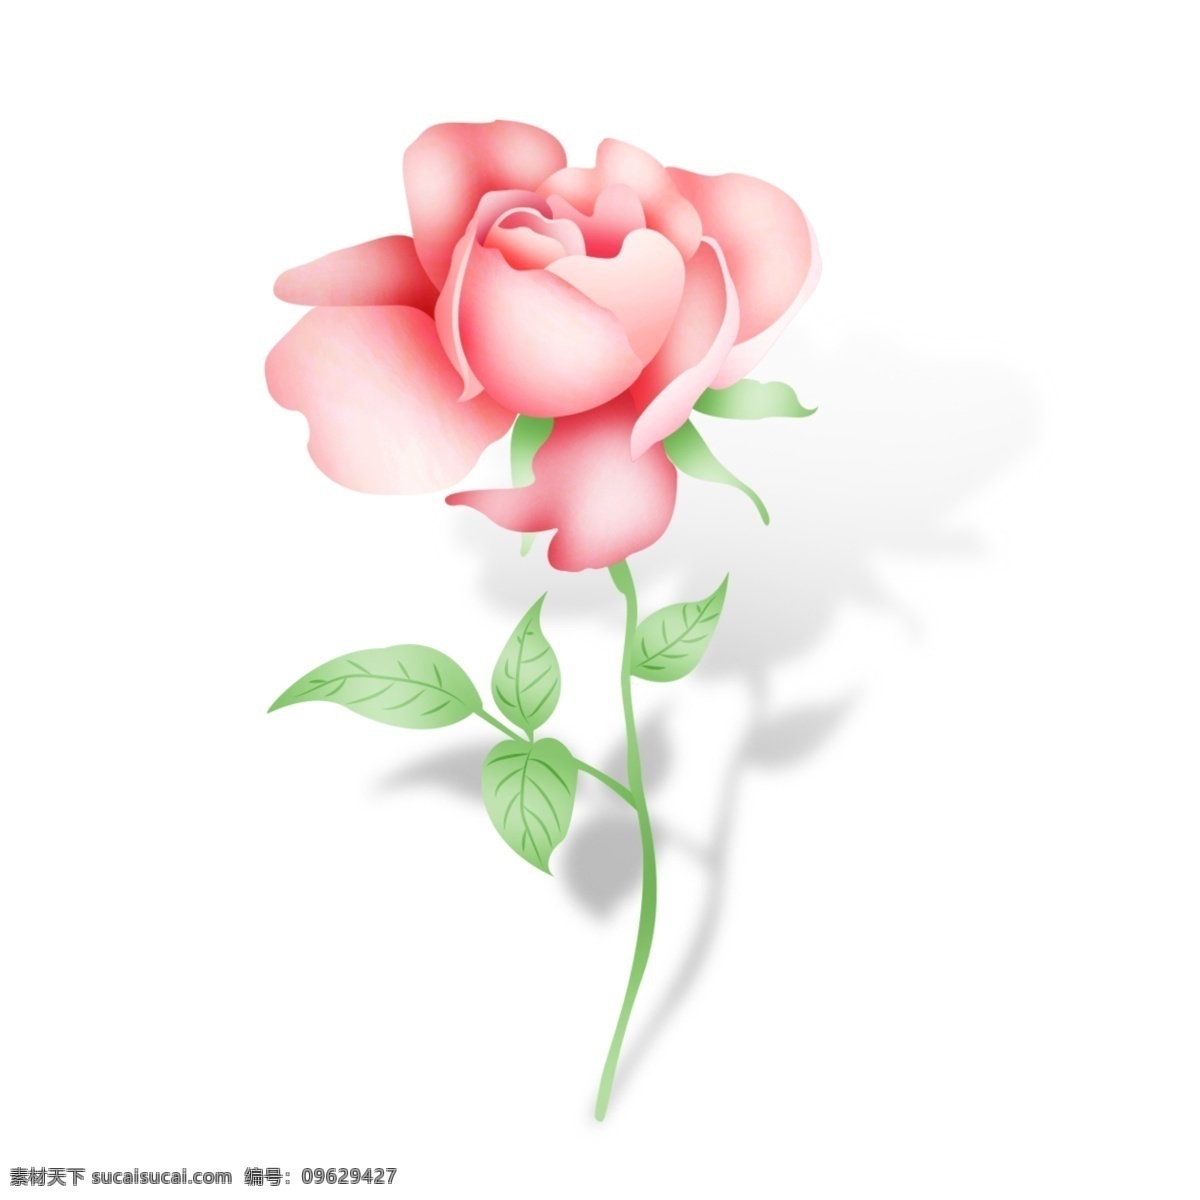 小清 新手 绘 矢量 粉 玫瑰花 支 小清晰 矢量玫瑰 粉色玫瑰花 手绘玫瑰 装饰物 一枝花 手绘